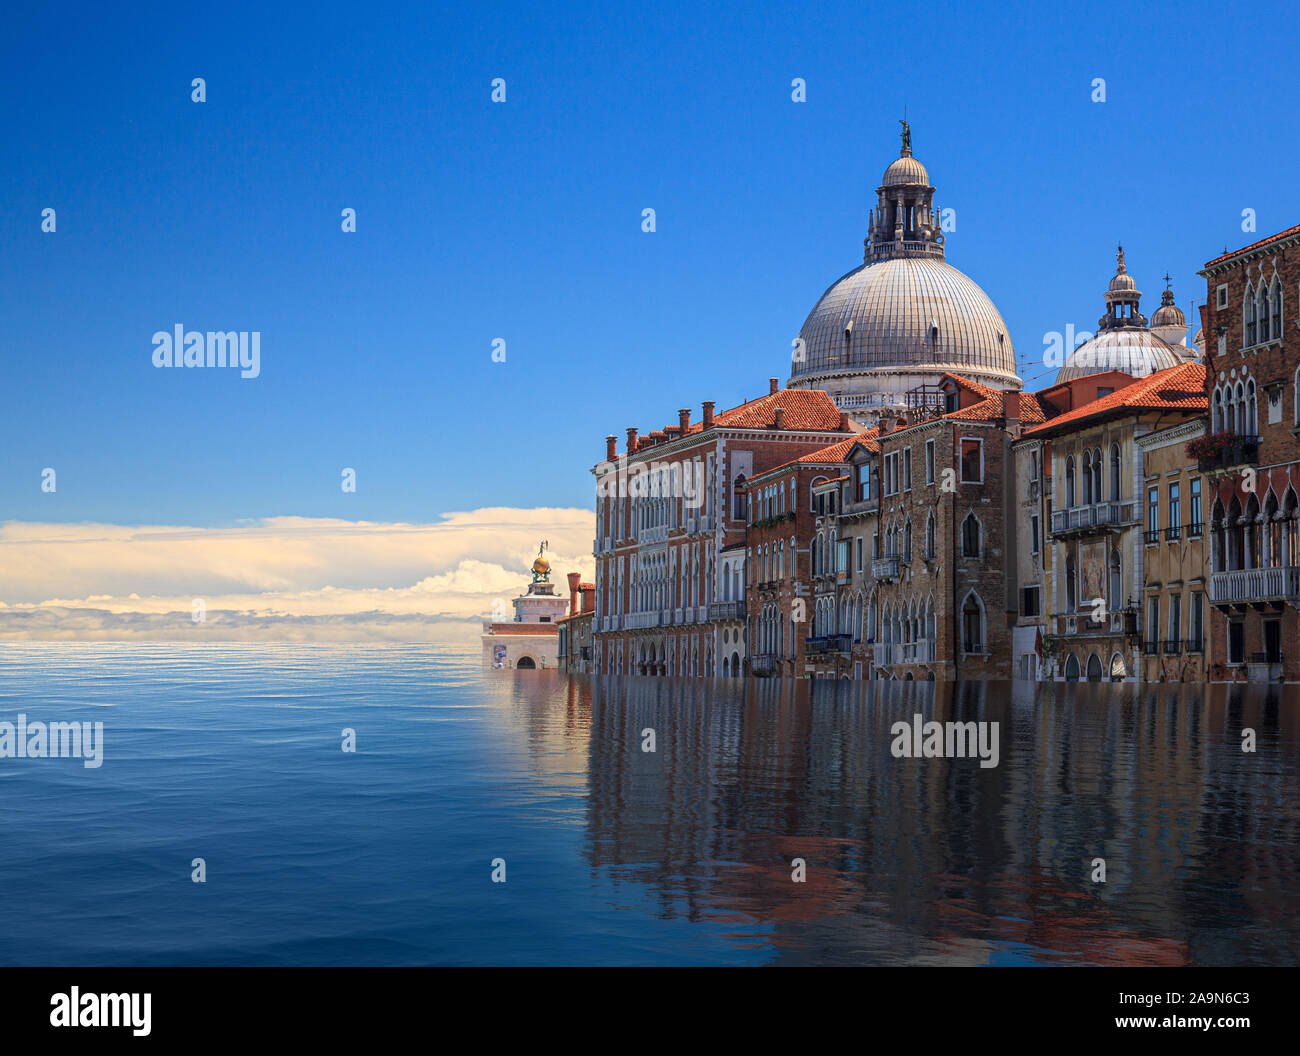 Konzept Bild von einem überfluteten Santa Maria Salute Kirche in Venedig wie Anstieg des Meeresspiegels macht die Stadt unbewohnbar Stockfoto